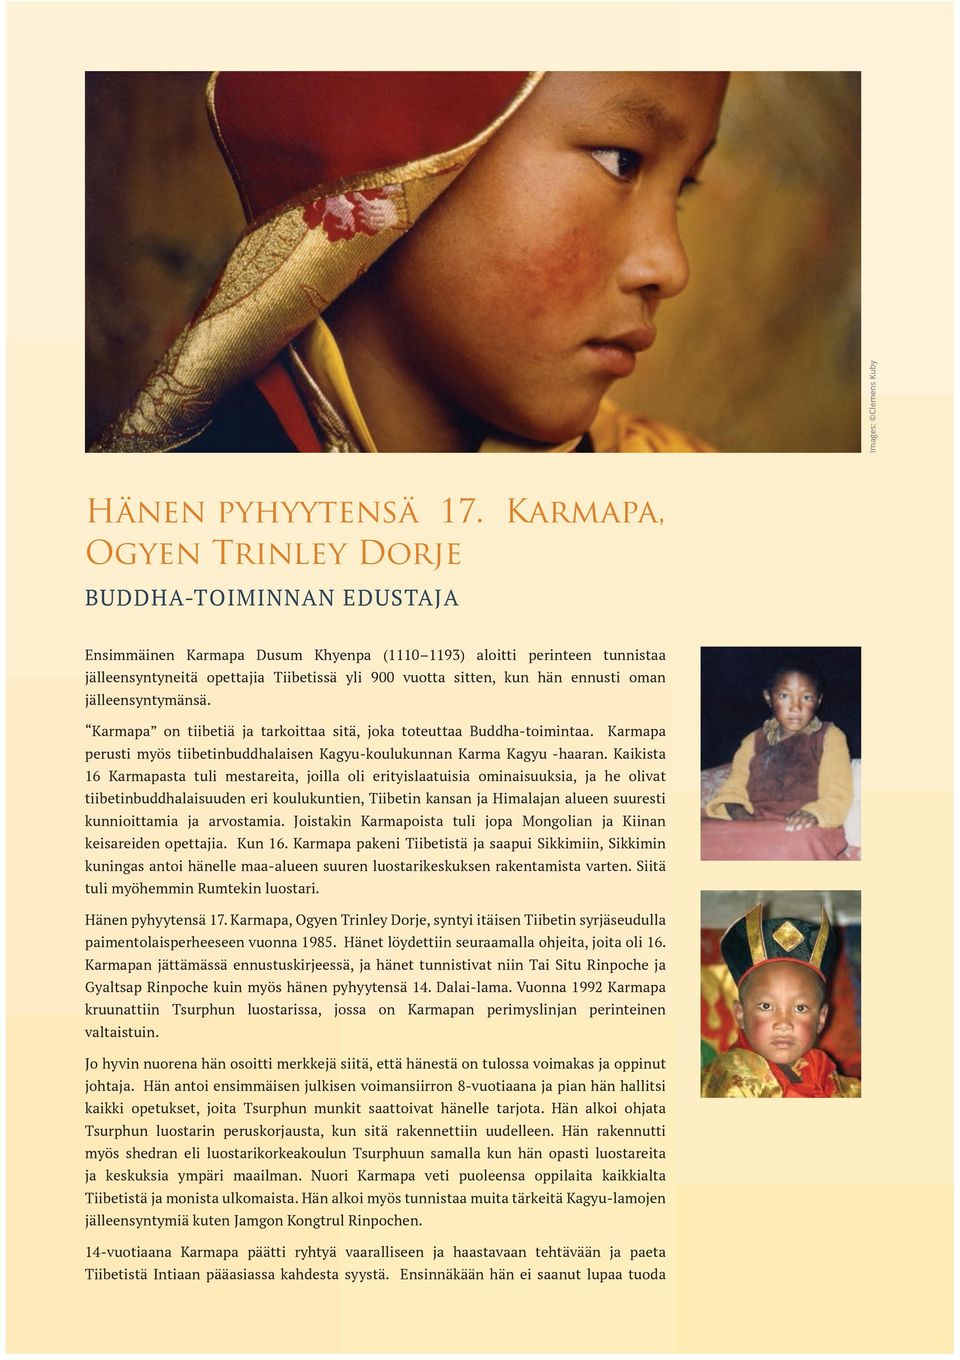 ennusti oman jälleensyntymänsä. Karmapa on tiibetiä ja tarkoittaa sitä, joka toteuttaa Buddha-toimintaa. Karmapa perusti myös tiibetinbuddhalaisen Kagyu-koulukunnan Karma Kagyu -haaran.